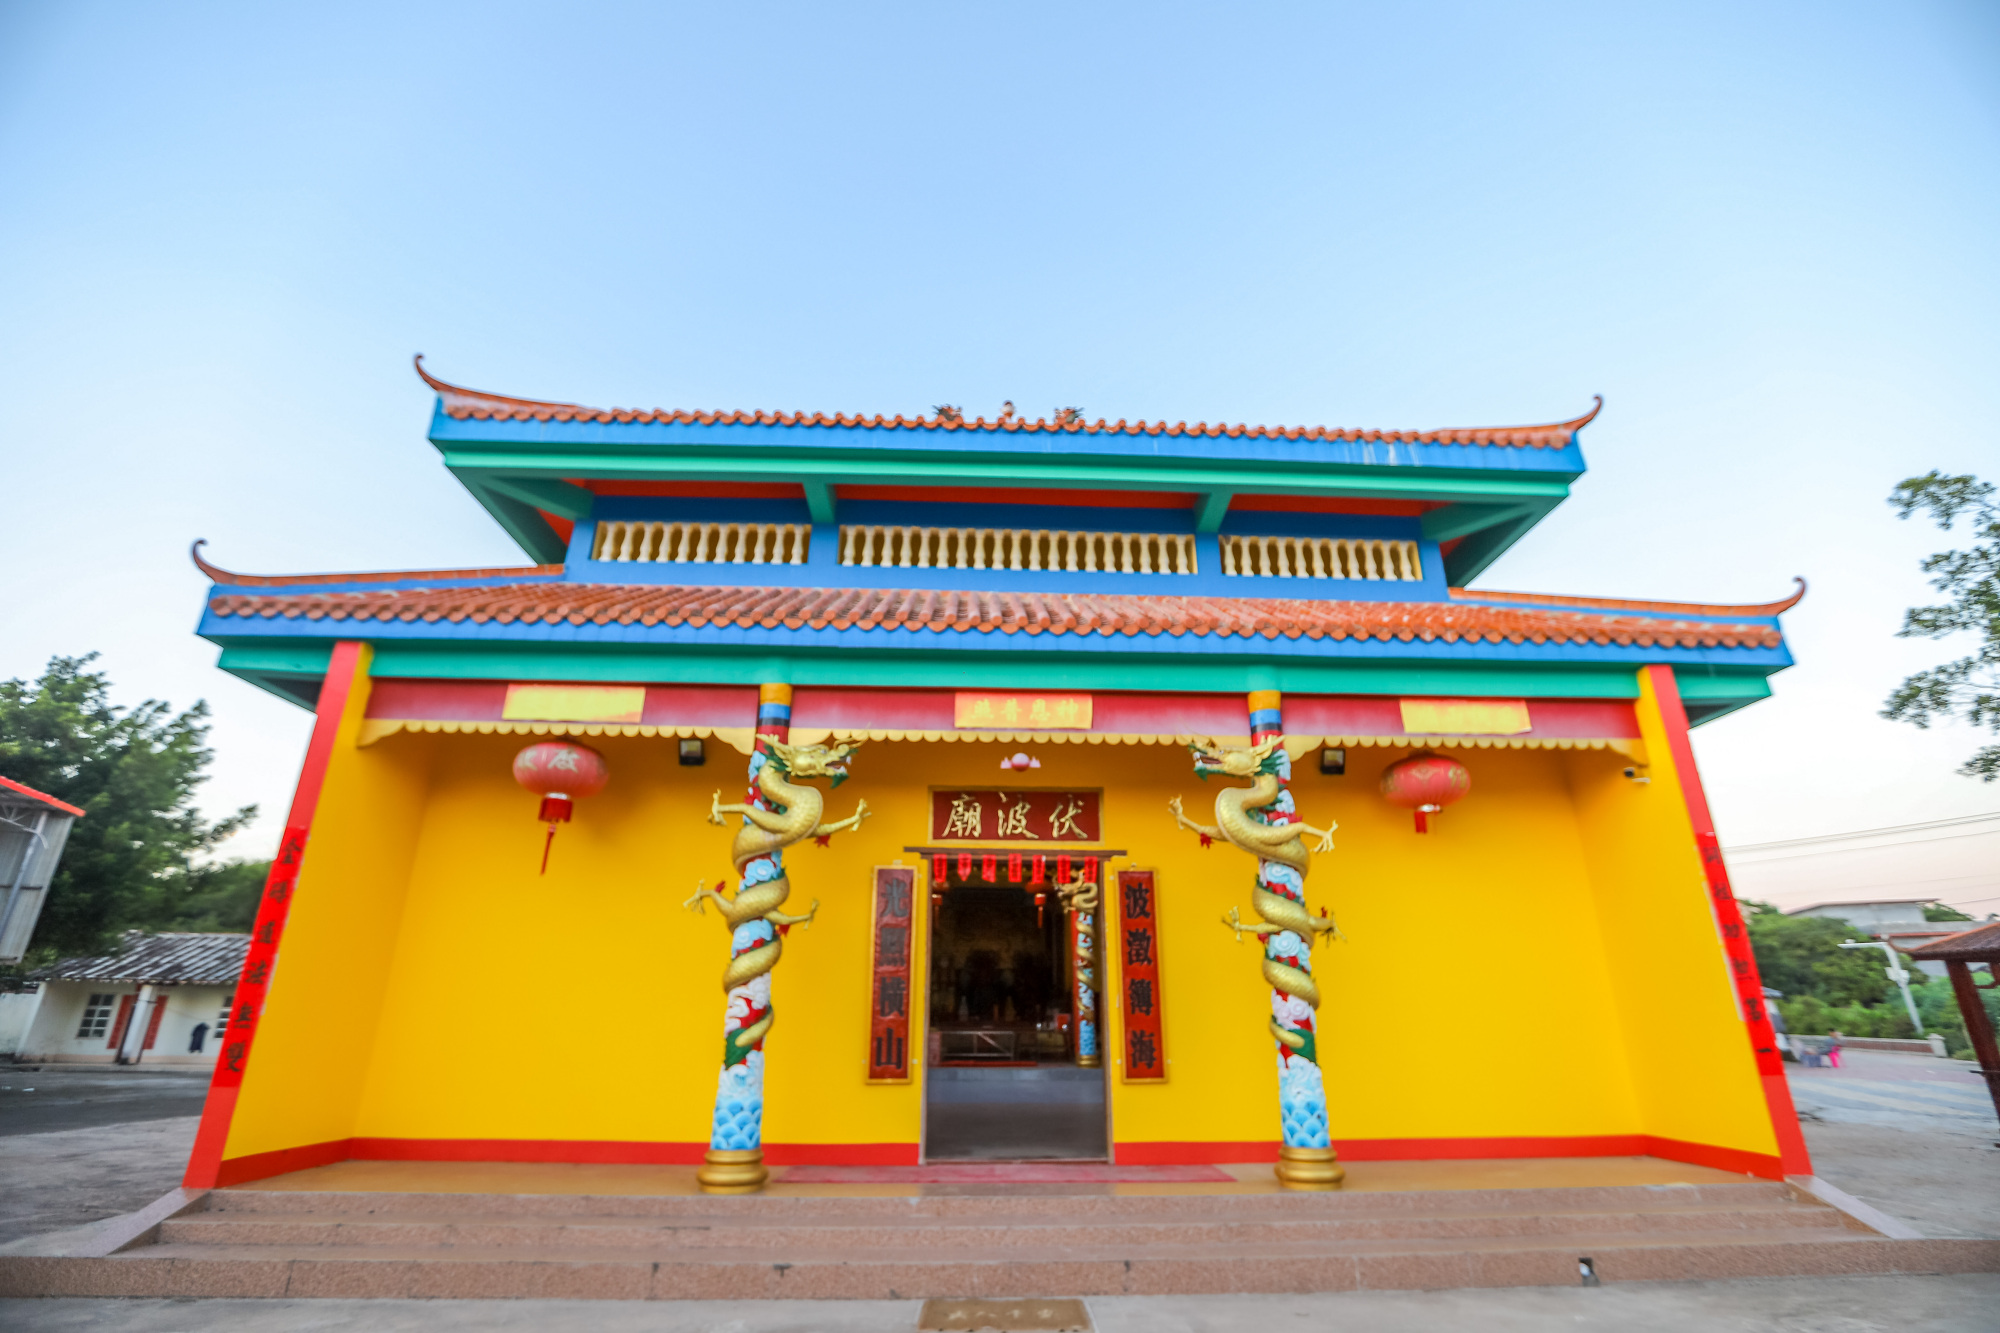 钦州伏波庙,纪念东汉名将马援而建,其庙会文化游神很有特色